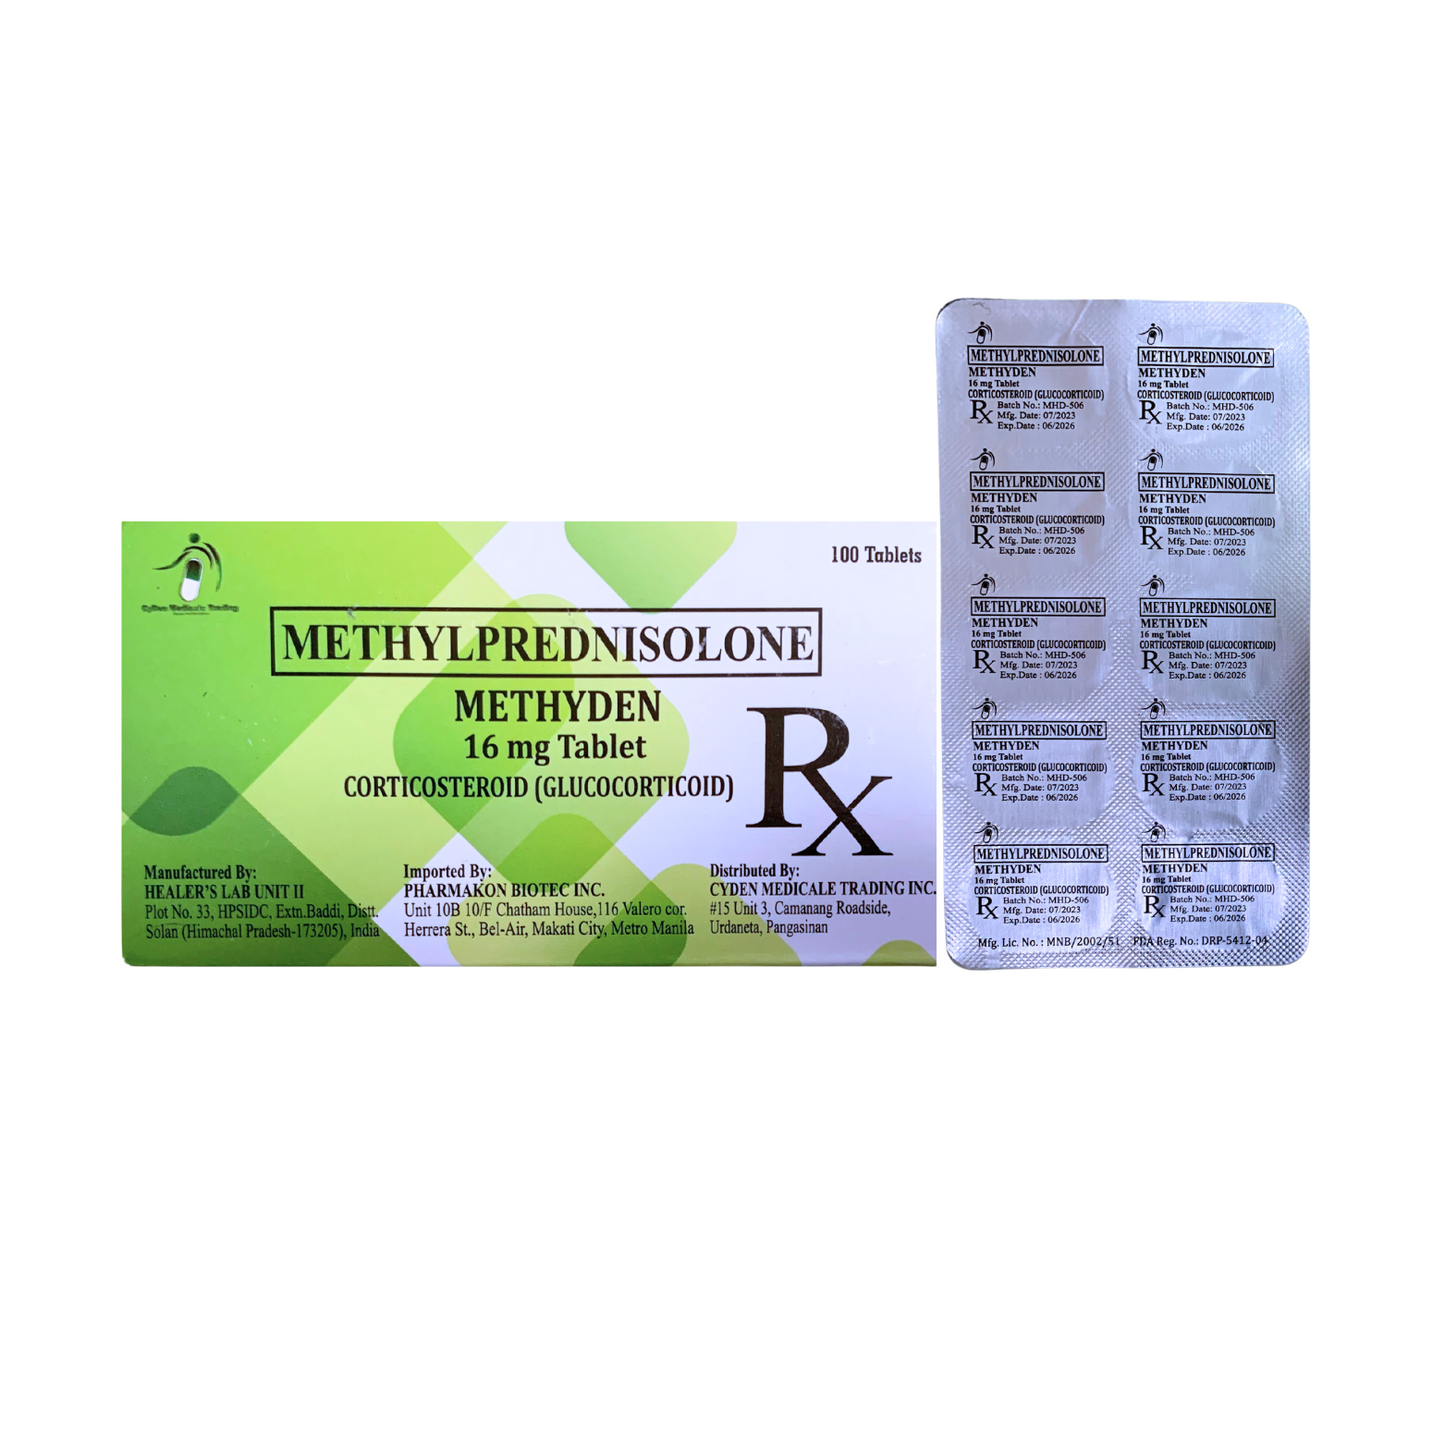 MEDROL Methylprednisolone 16mg Tablet x 1